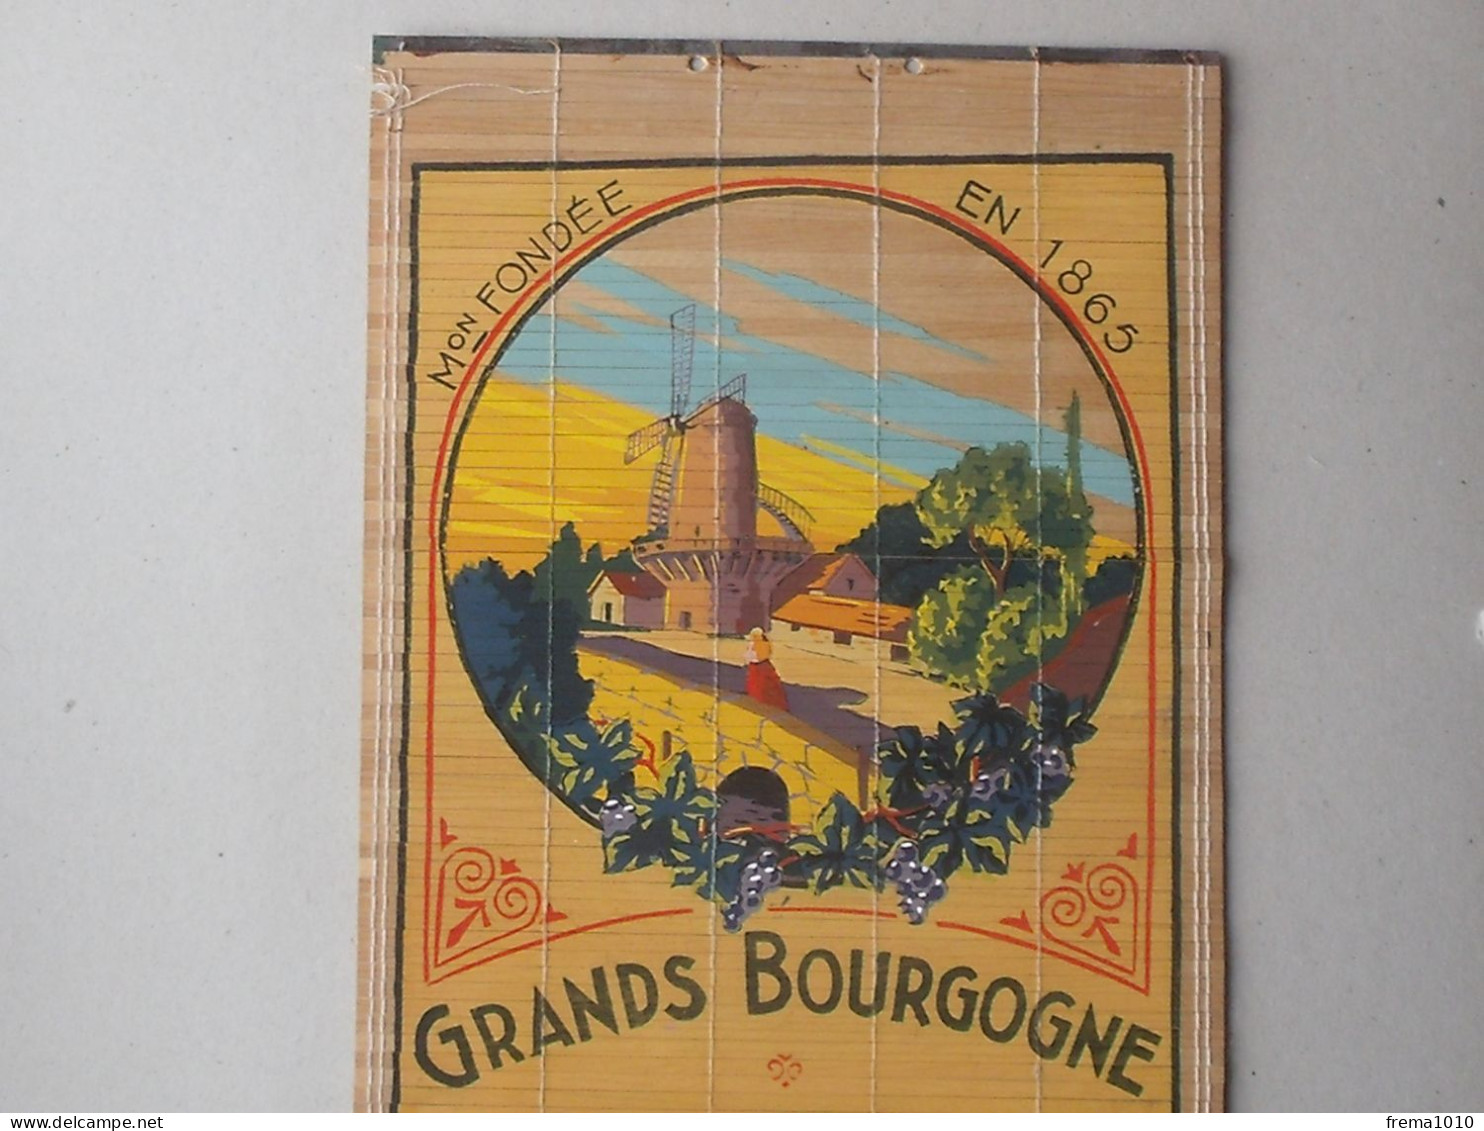 ROMANECHE-THORENS CHENAS: Store Publicitaire Ancien VIN MOULIN A VENT Bourgogne MACONNAIS Propr. JAMBON 1865 ROQUIN - Alcools